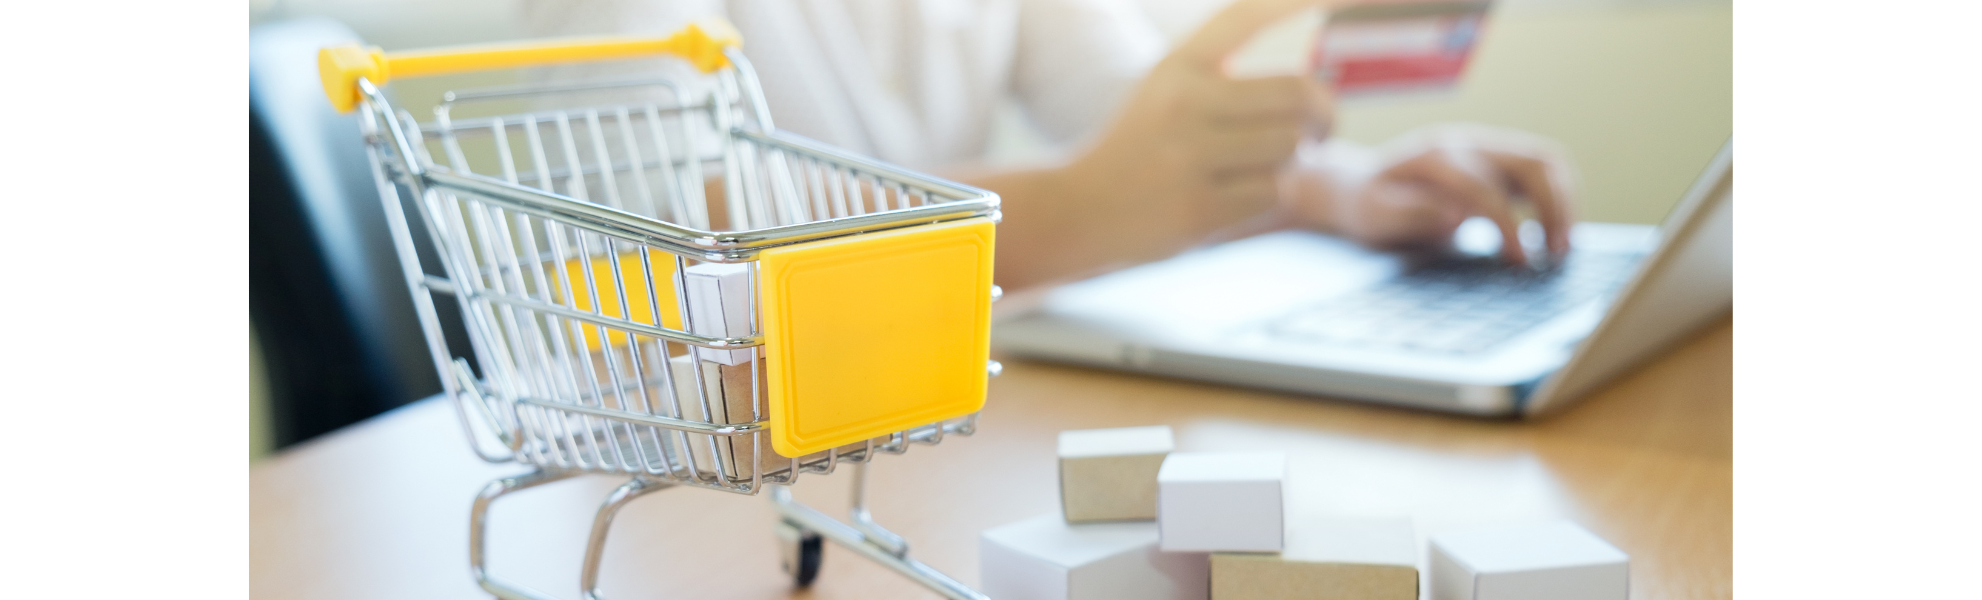 Tudo o que você precisa saber sobre e-commerce e marketplace no cenário atual